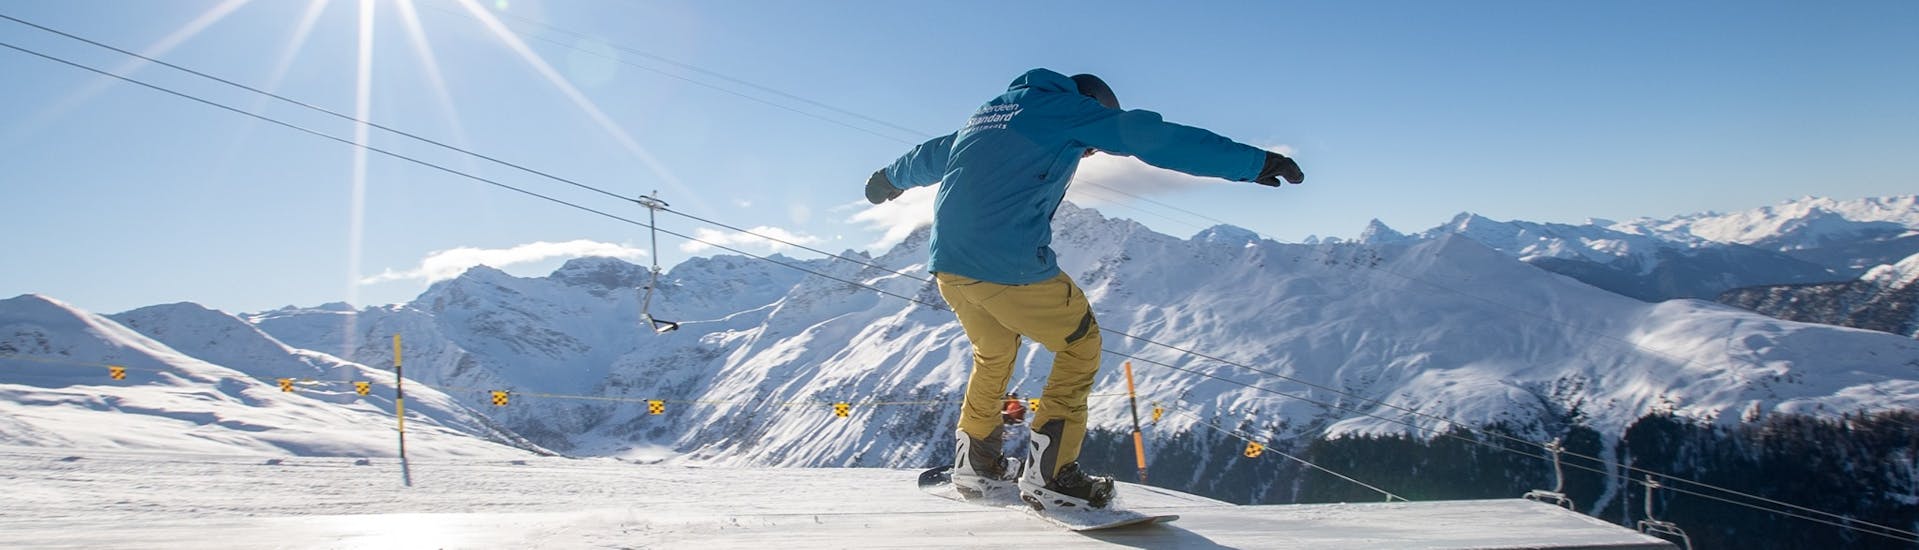 Un snowboarder hace trucos durante las Clases particulares de snowboard para niños y adultos para snowboarders avanzados con Swiss Ski School Davos.